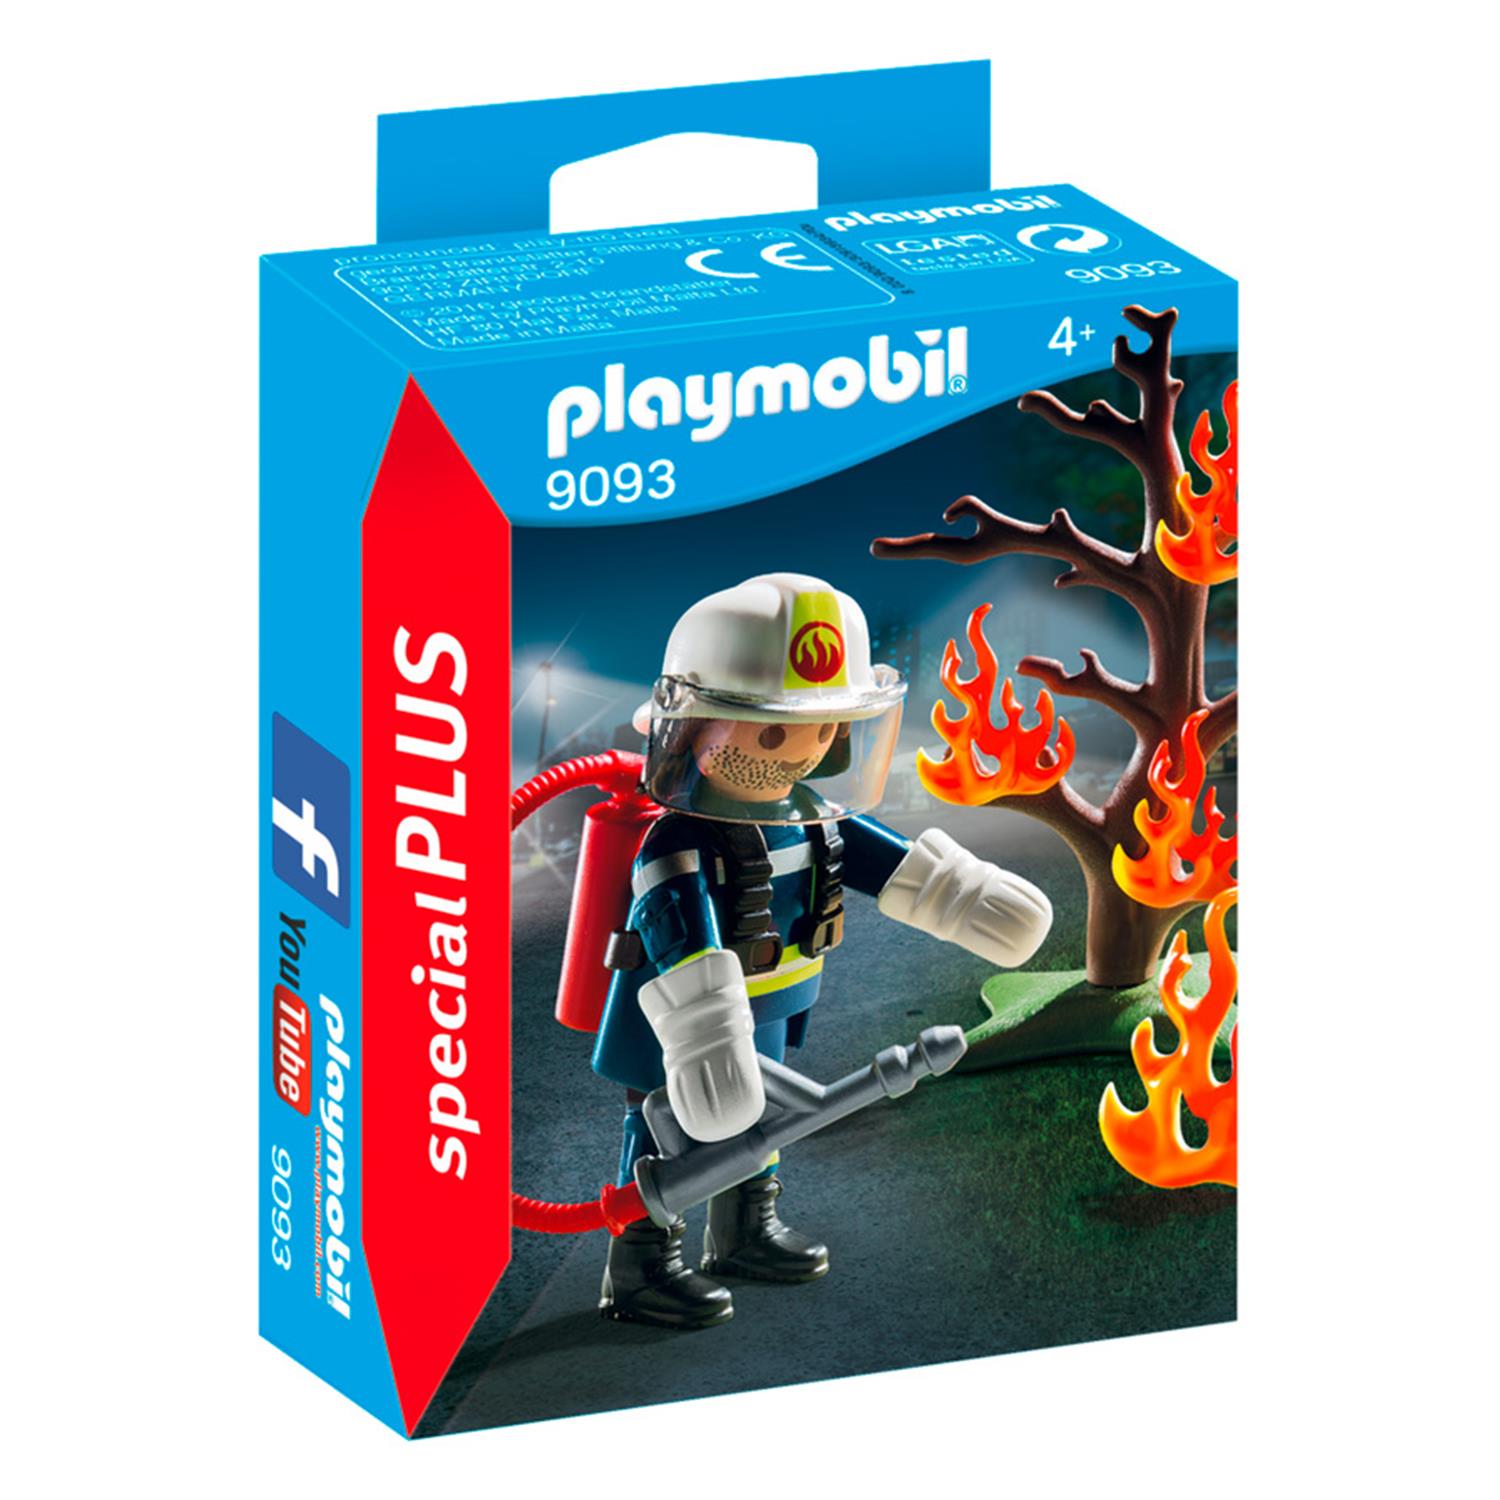 playmobil SPECIAL PLUS N° 9093 # Feuerwehr Löscheinsatz # Feuerwehrmann ~ neu 